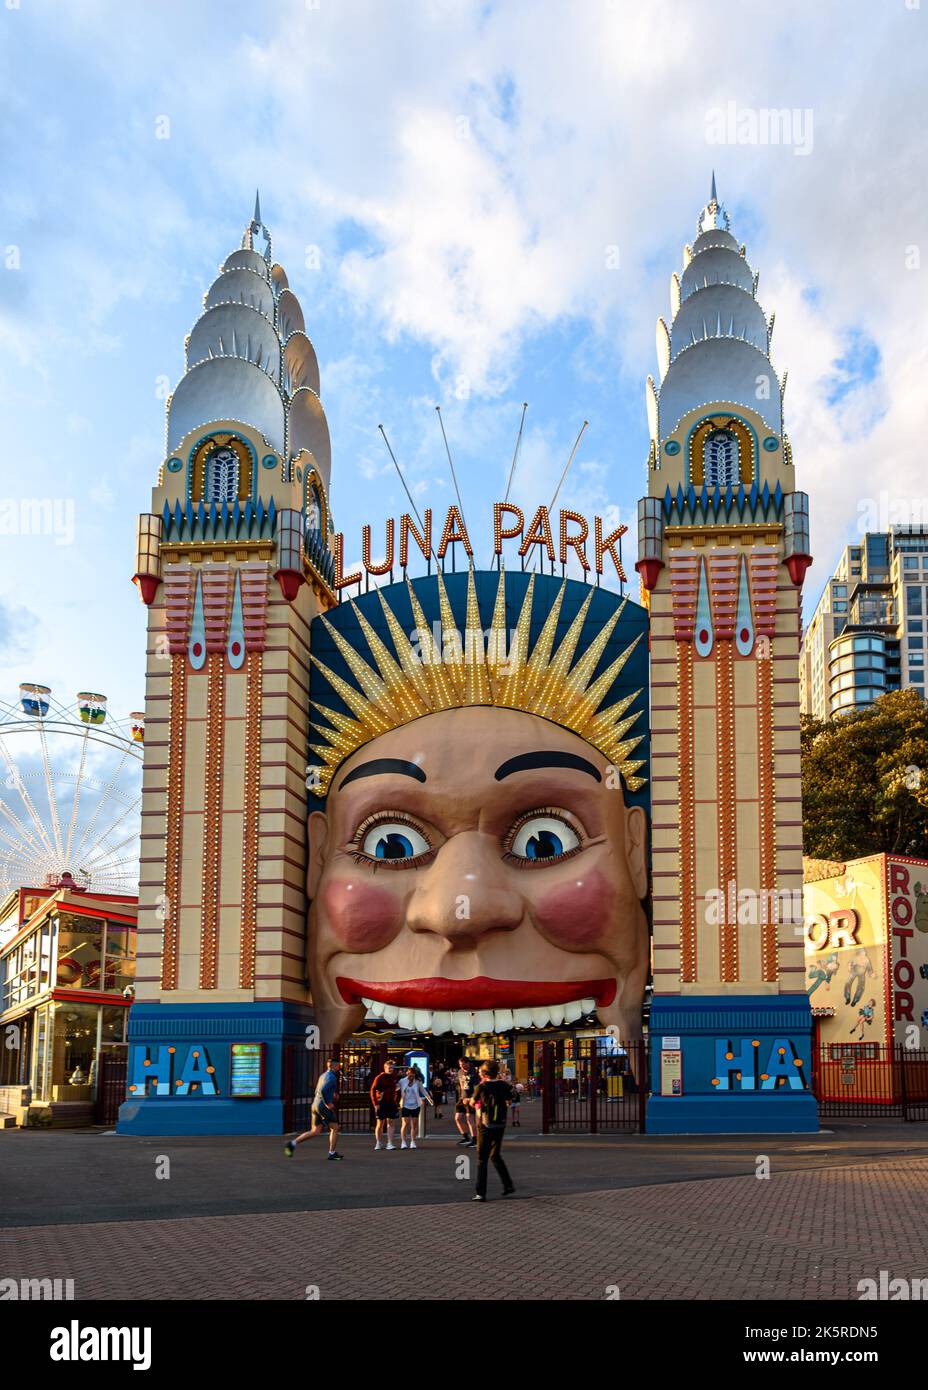 La puerta de entrada al parque de atracciones Luna Park en Sydney Foto de stock